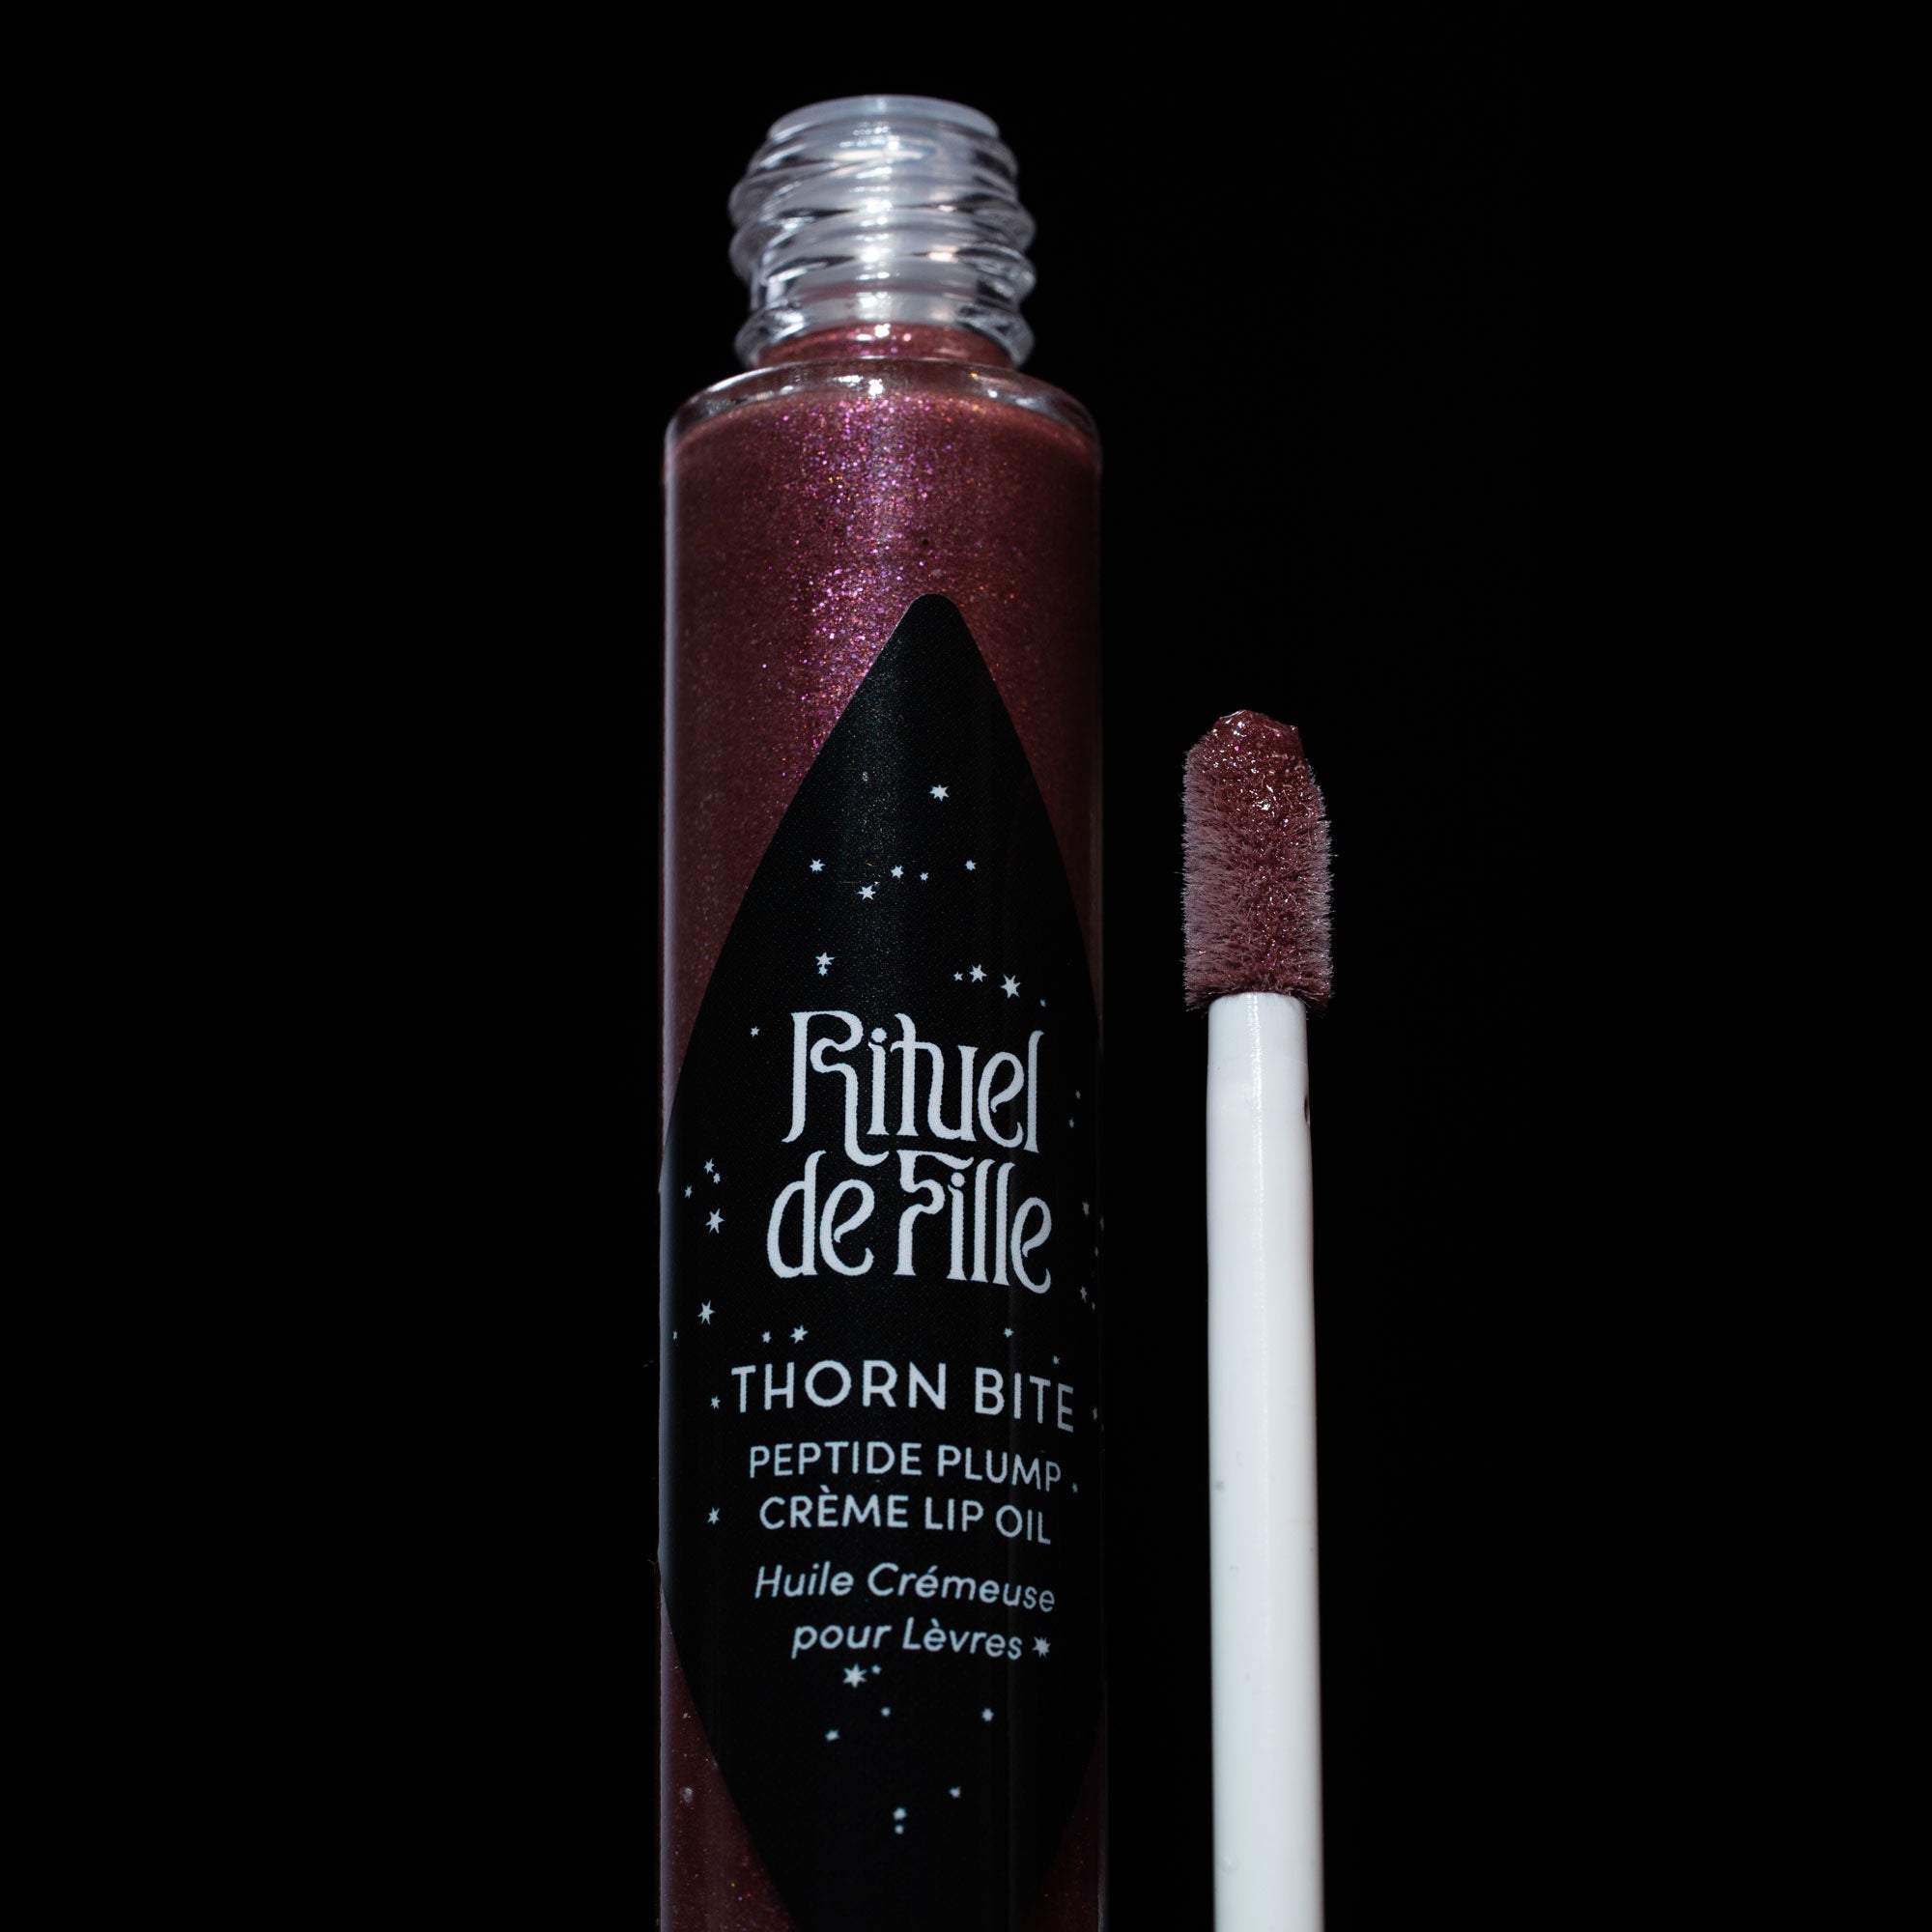 NEW! Rituel de Fille Thorn Bite Peptide Plump Creme Lip Oil - All